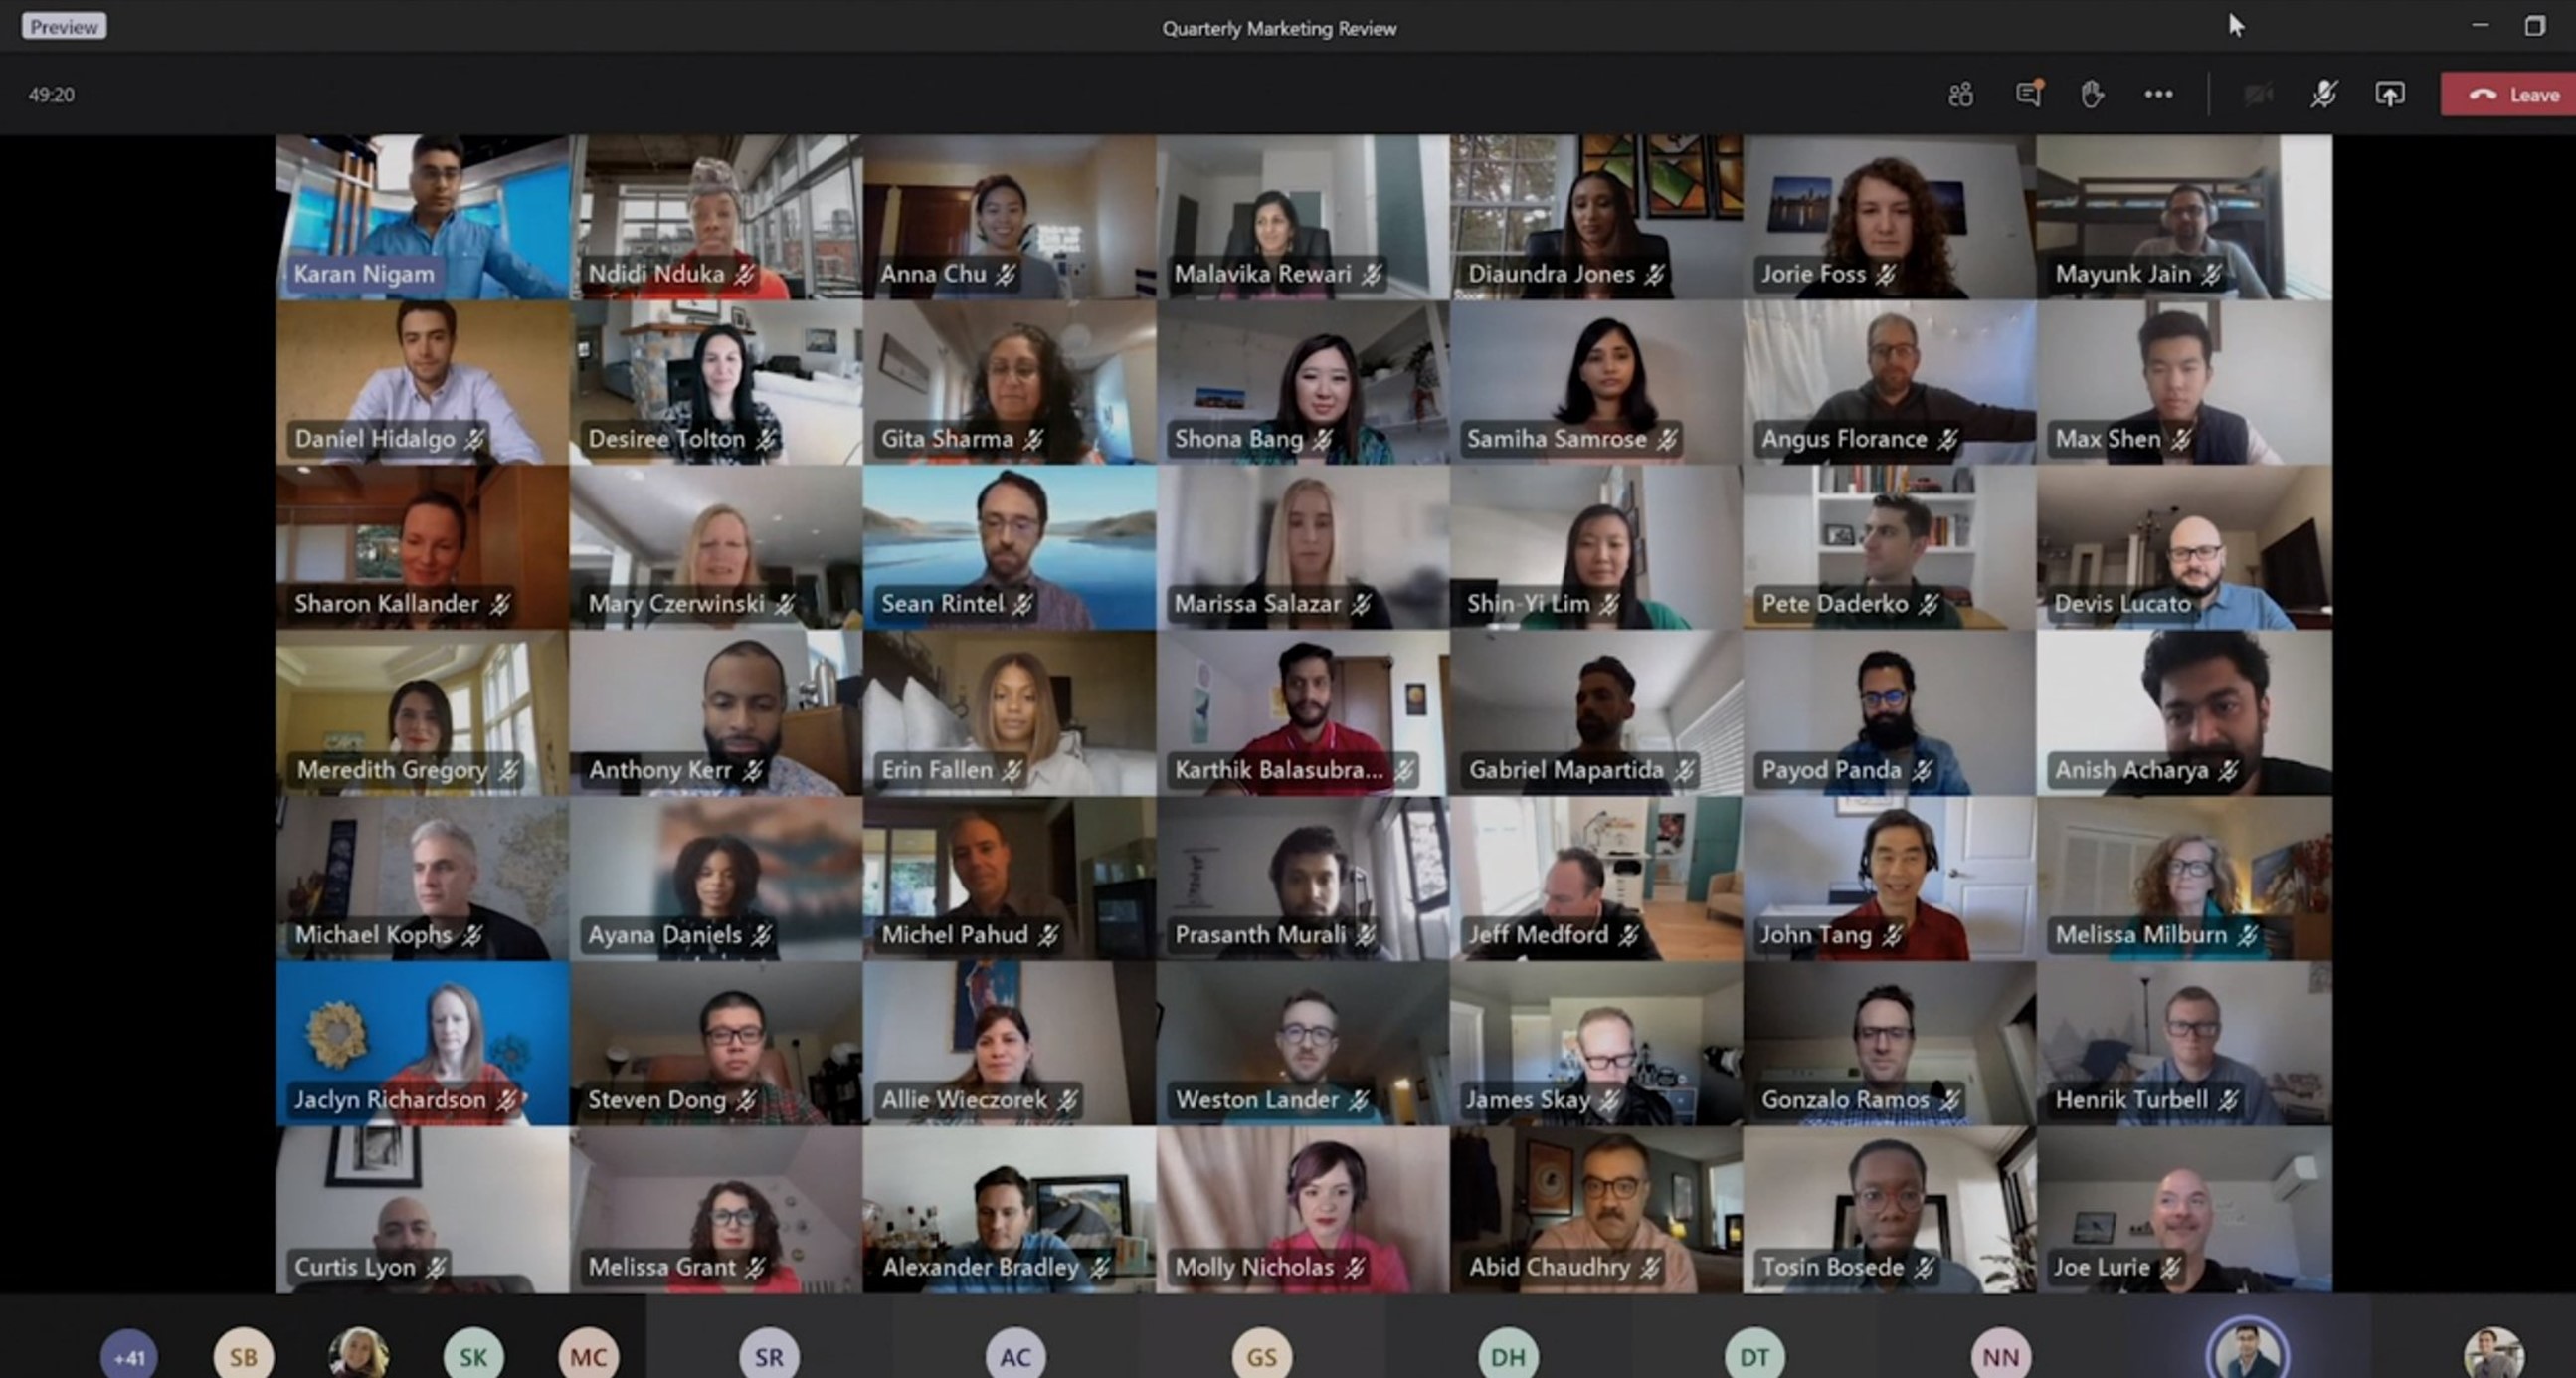 Cuarenta y nueve personas mostrando su vídeo en Microsoft Teams.